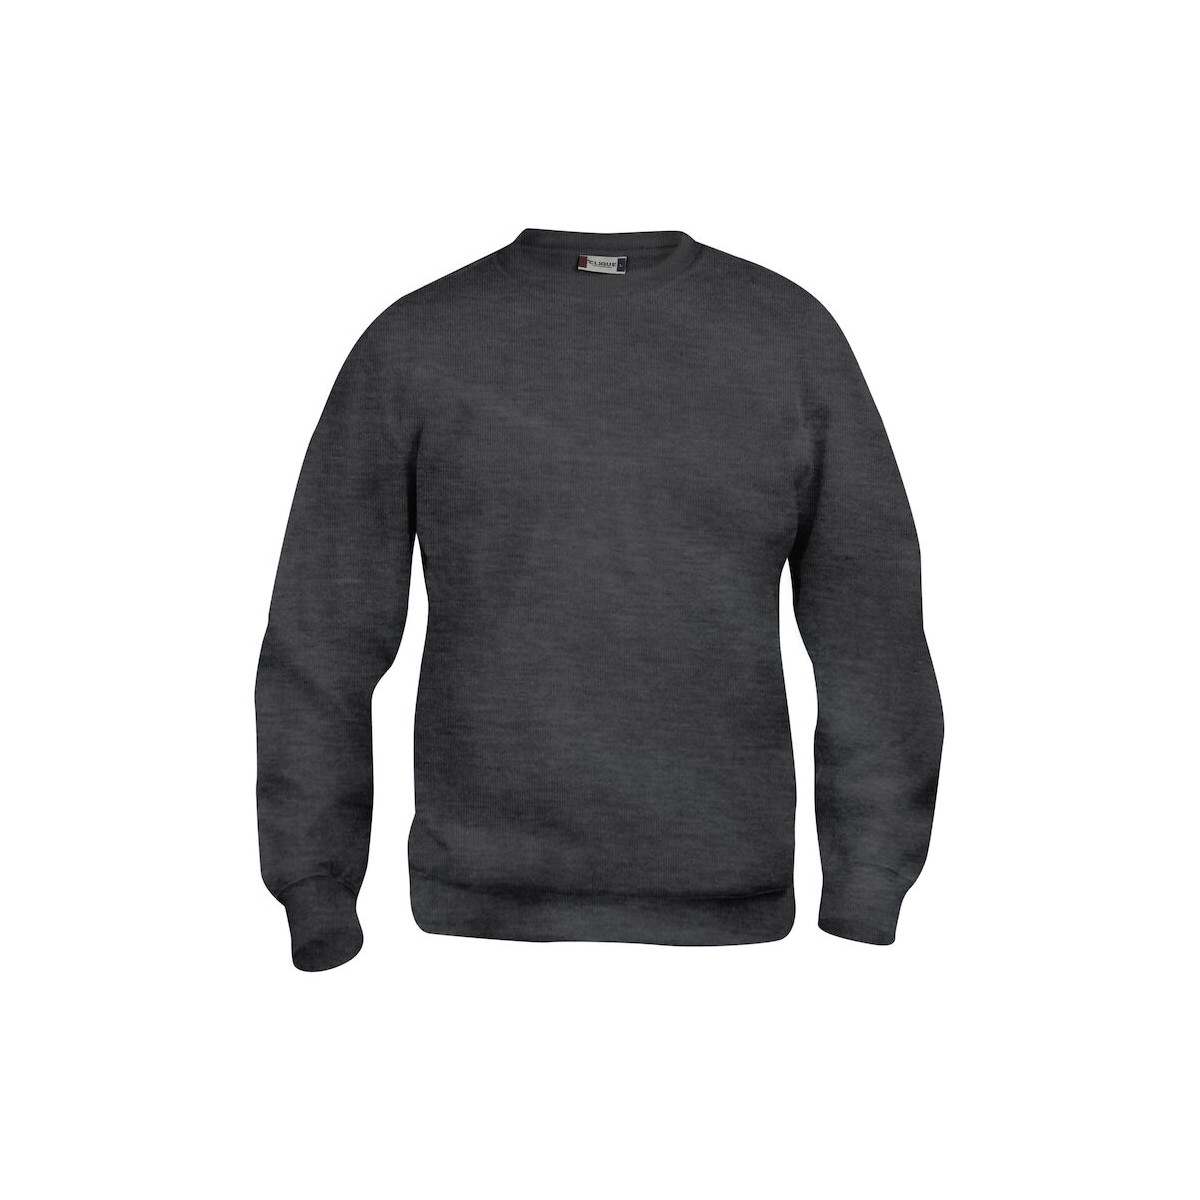 Sweatshirt col rond unisexe - 65% polyester et 35% coton - CLIQUE - Personnalisable en petite quantité - Couleur anthracite